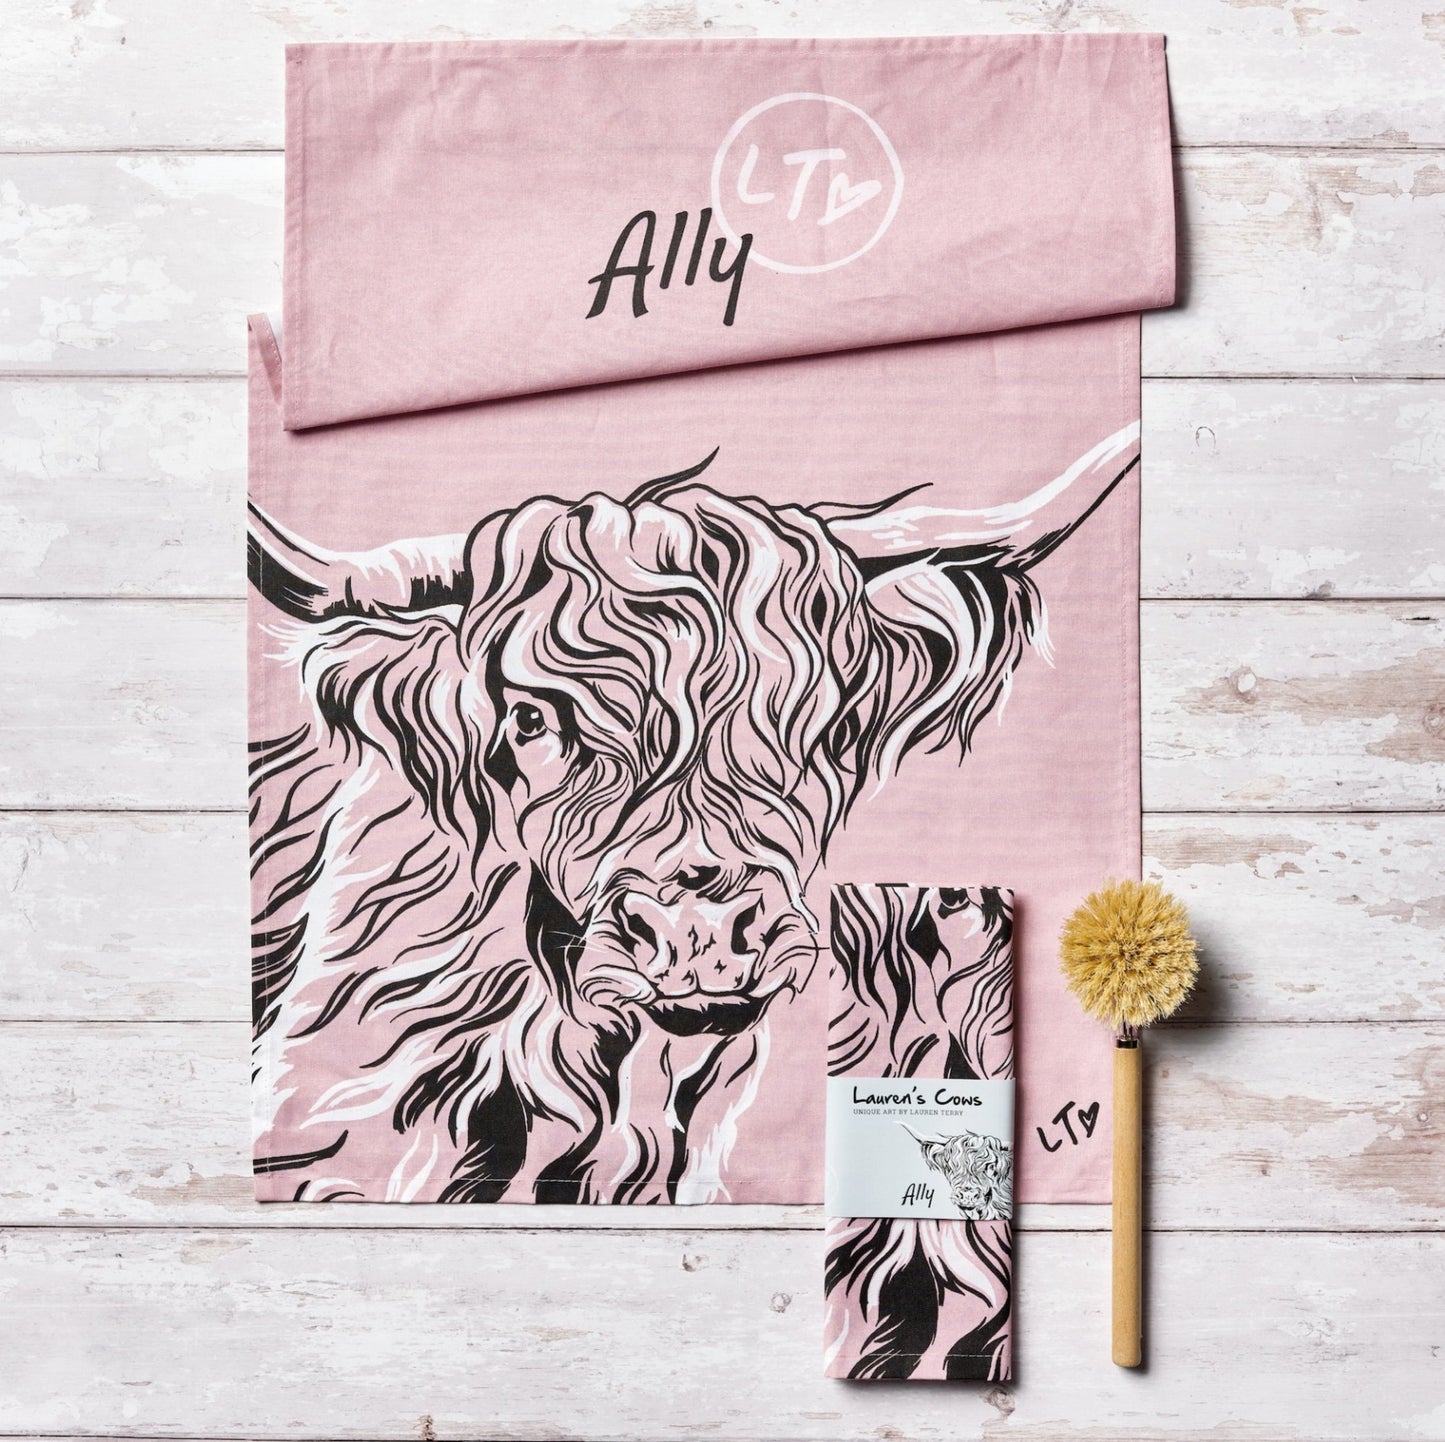 Lauren's Cows "Ally" Tea Towel